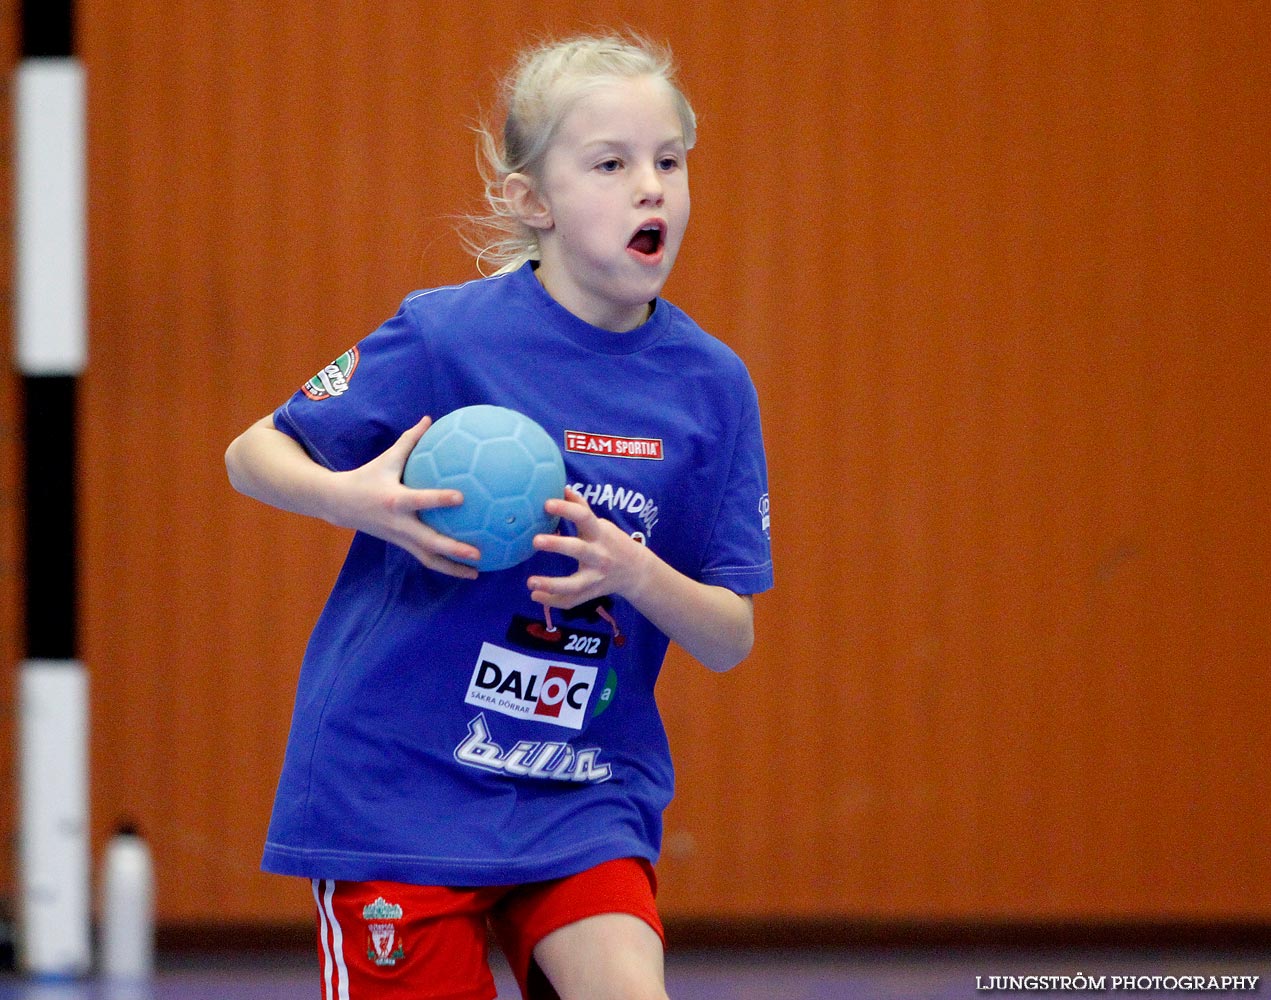 Klasshandboll Skövde 2012 Åldersklass 2003,mix,Arena Skövde,Skövde,Sverige,Handboll,,2012,46856